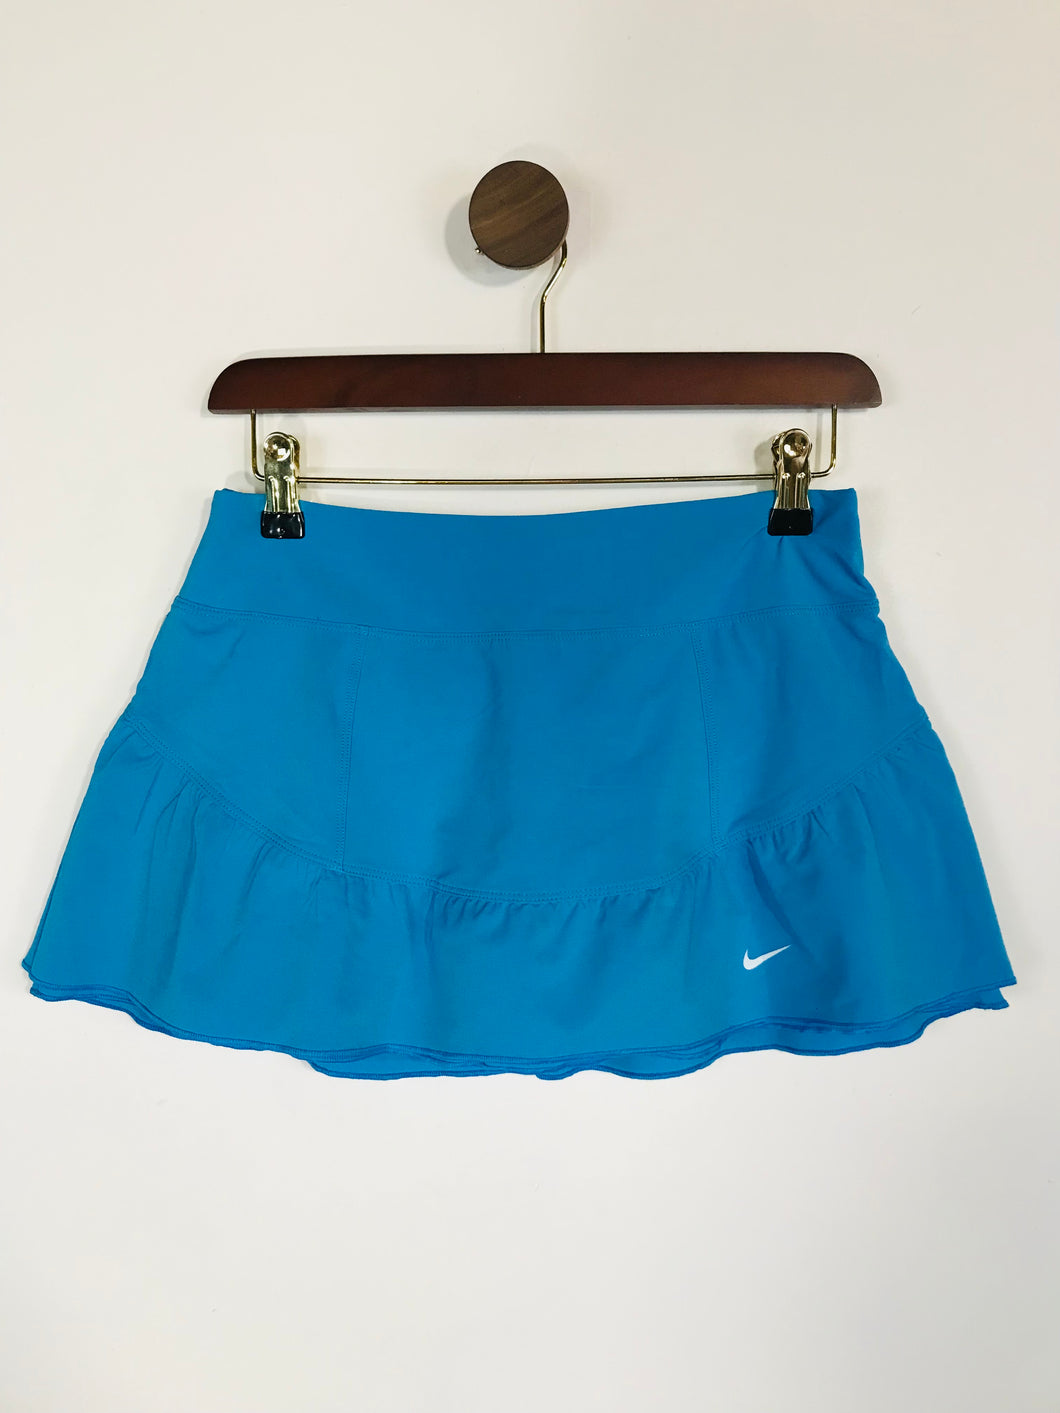 Nike Women's Internal Shorts Tennis Skirt Sports Bottoms | S UK10 | Blue